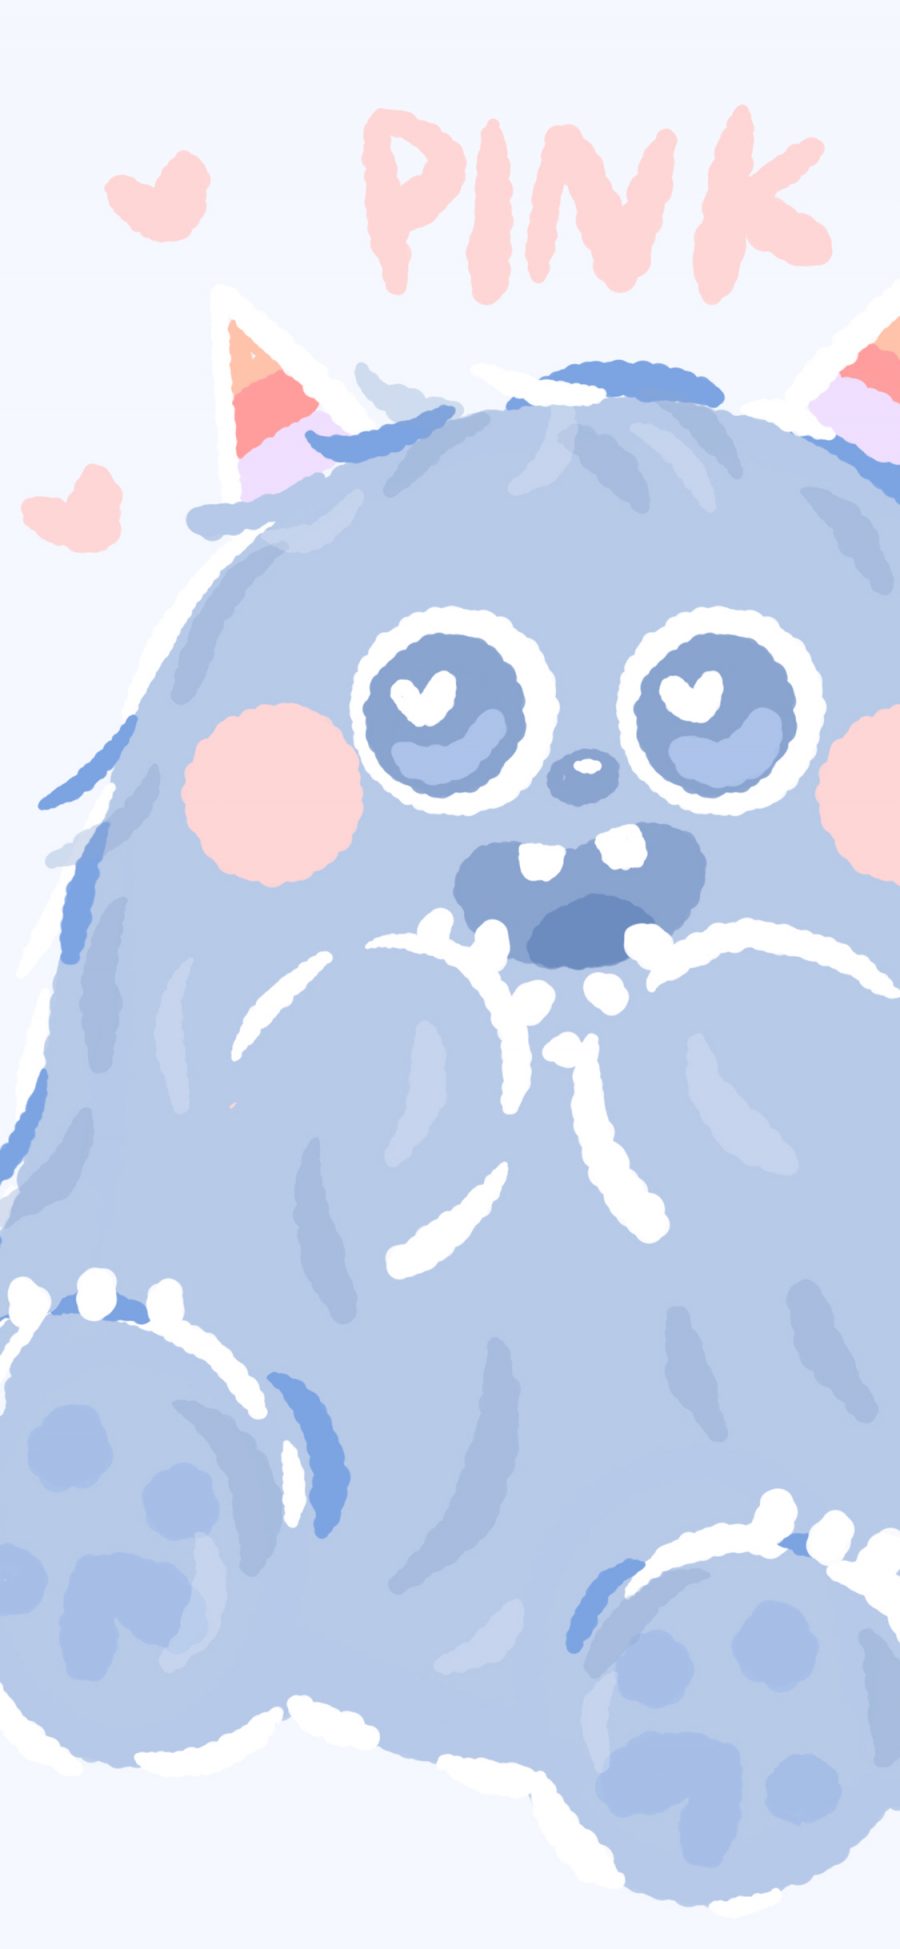 [2436×1125]小怪兽 可爱 爱心 萌 蓝色 苹果手机动漫壁纸图片